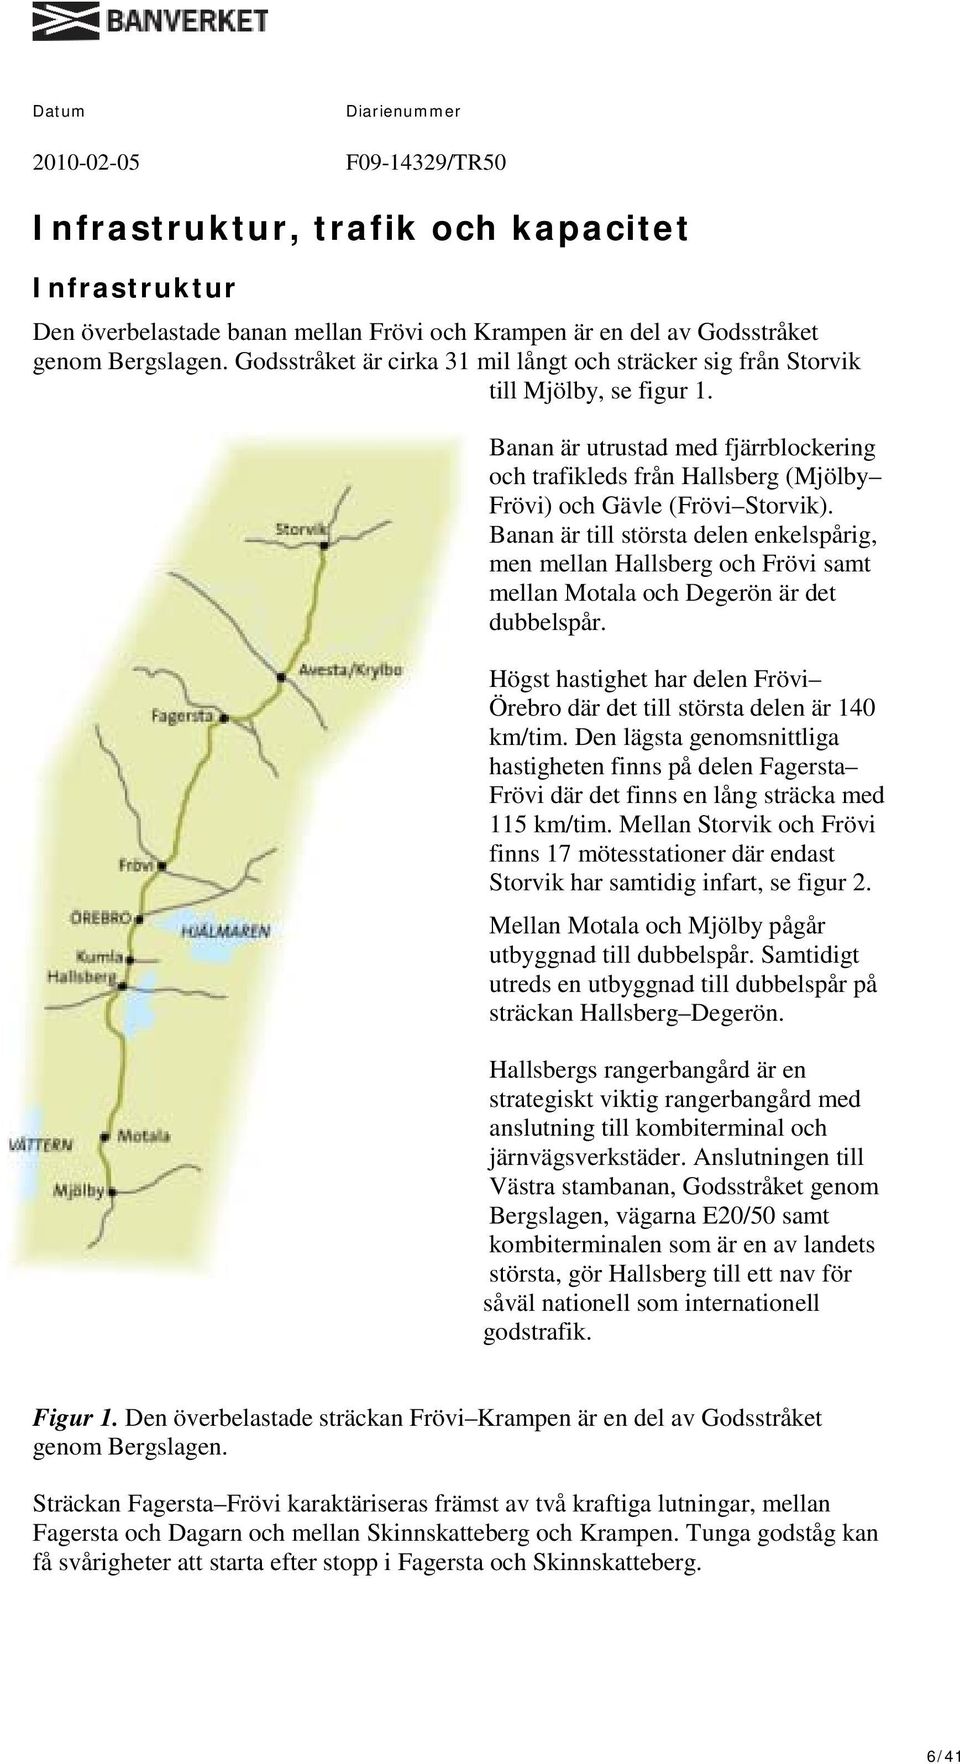 Banan är till största delen enkelspårig, men mellan Hallsberg och Frövi samt mellan Motala och Degerön är det dubbelspår.